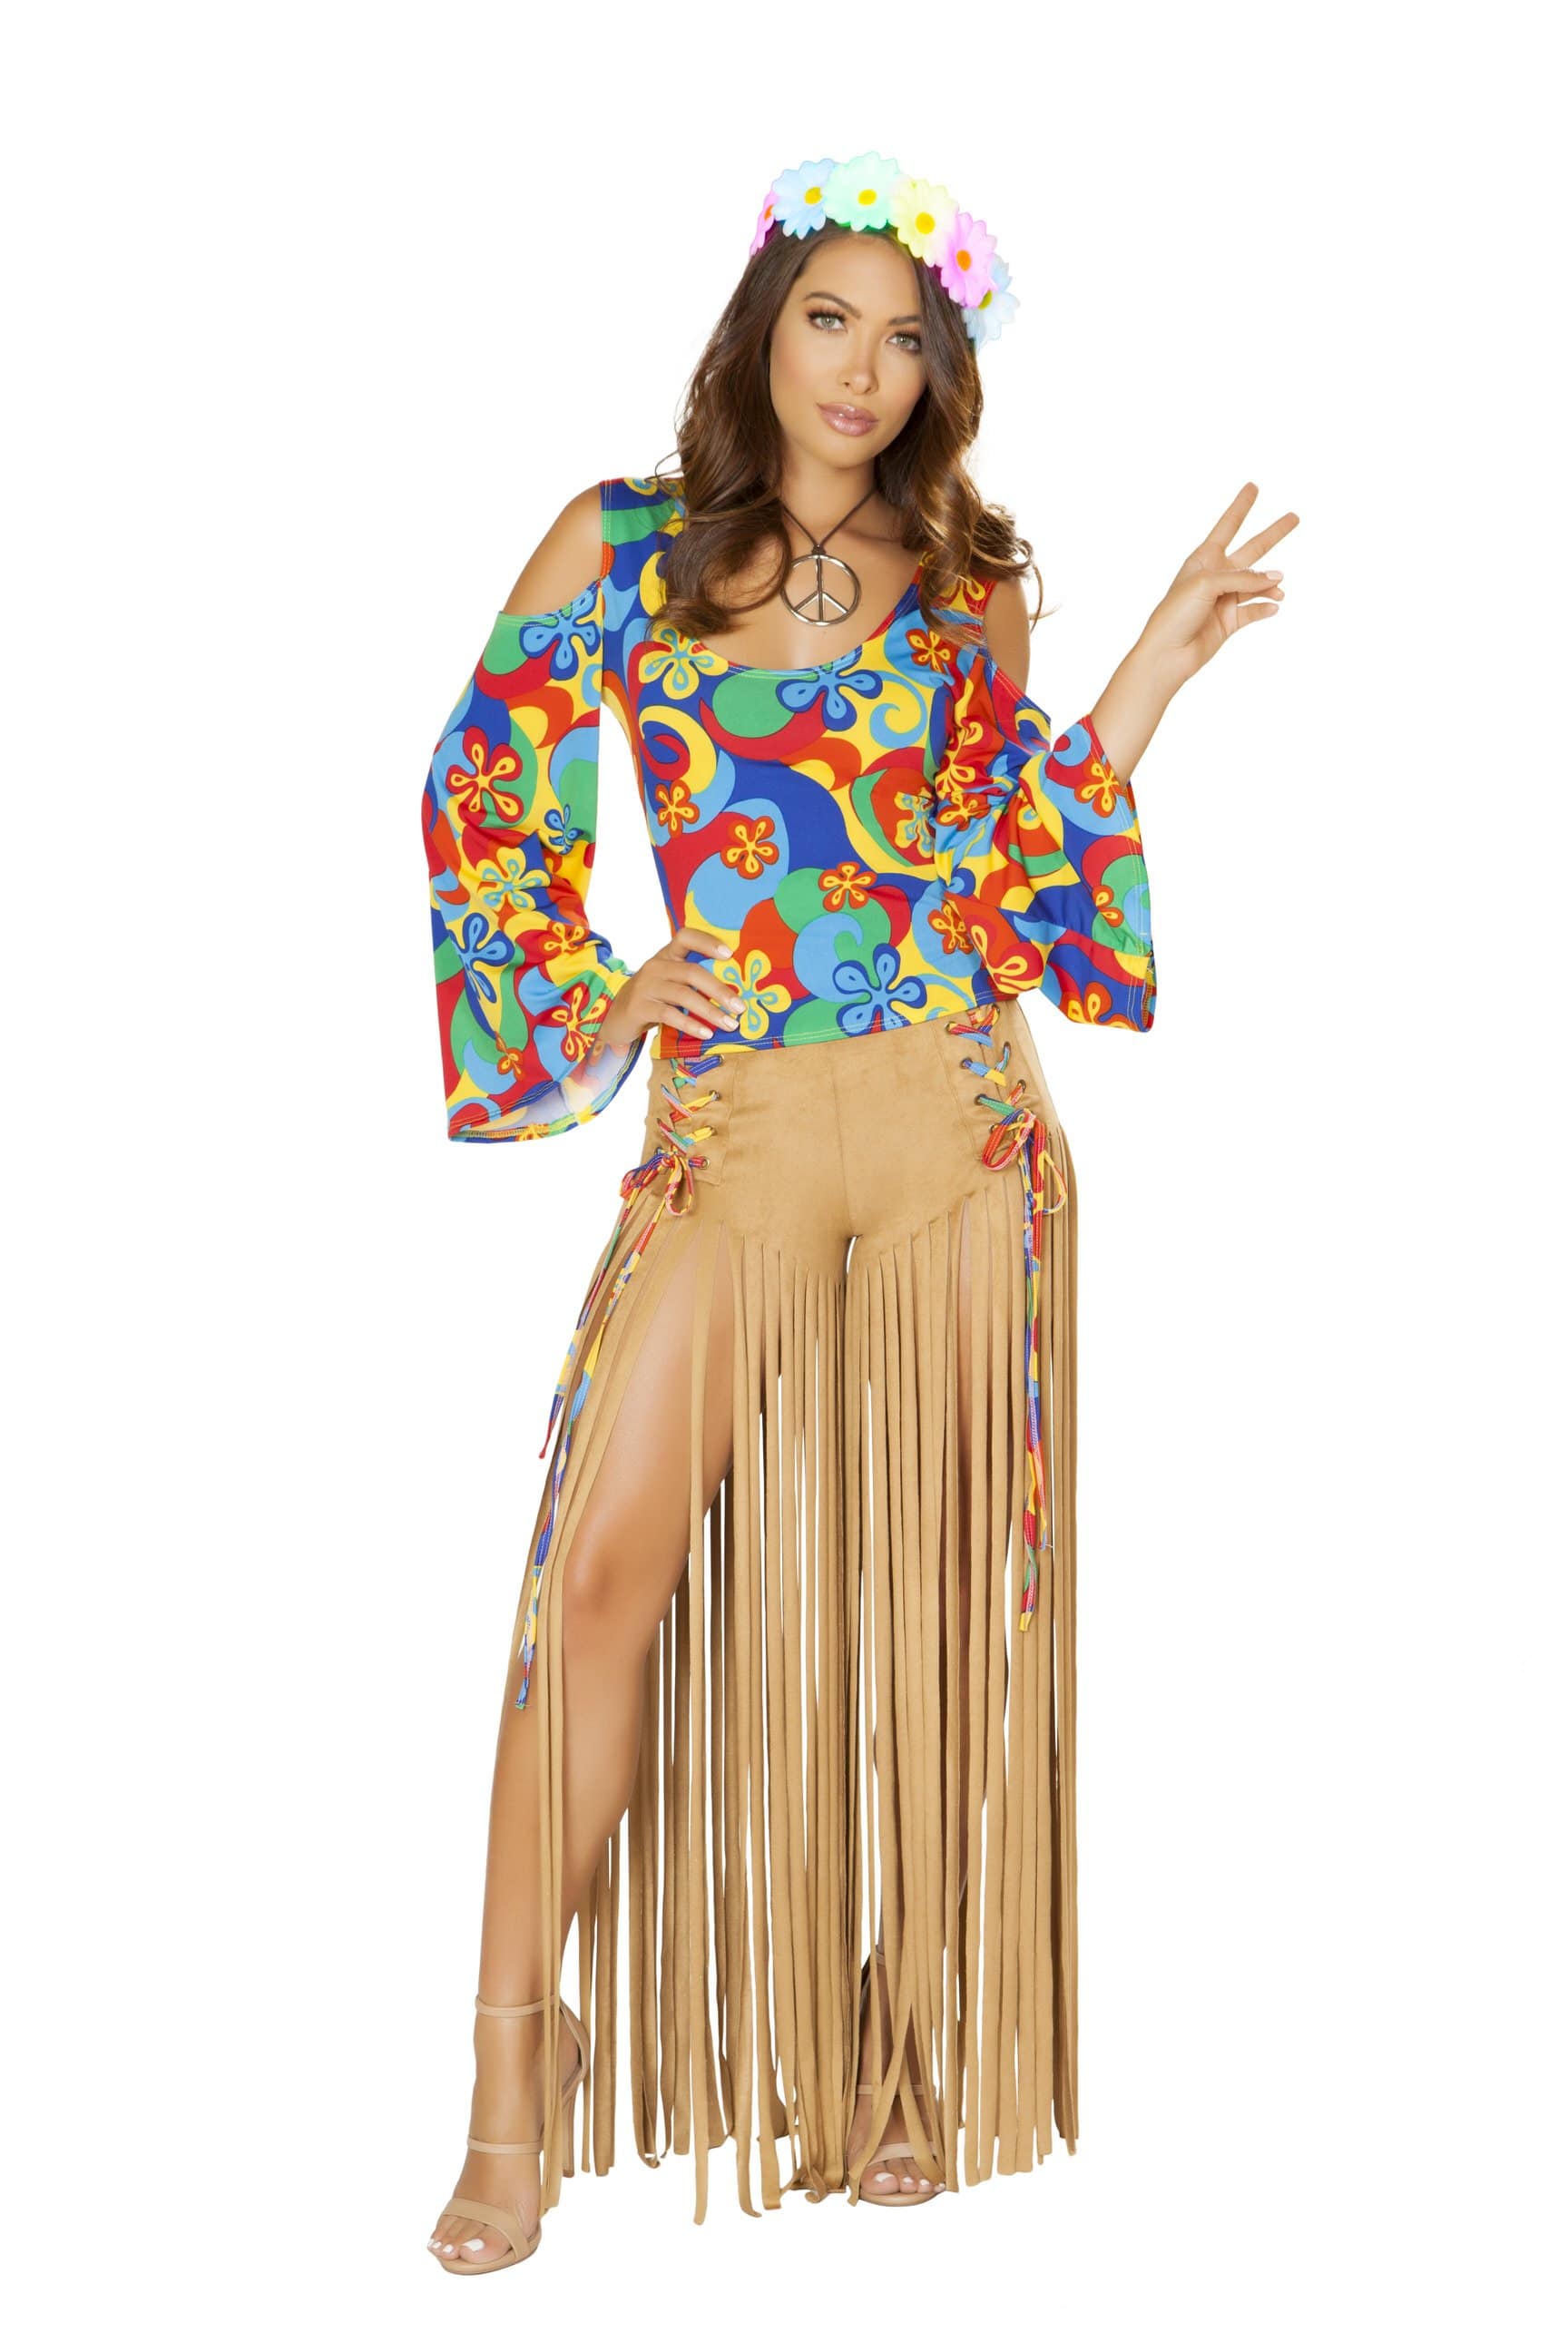 Roma Small / Multicolor 2pc Hippie Princess SHC-4881-S-R Apparel & Accessories > Costumes & Accessories > Costumes